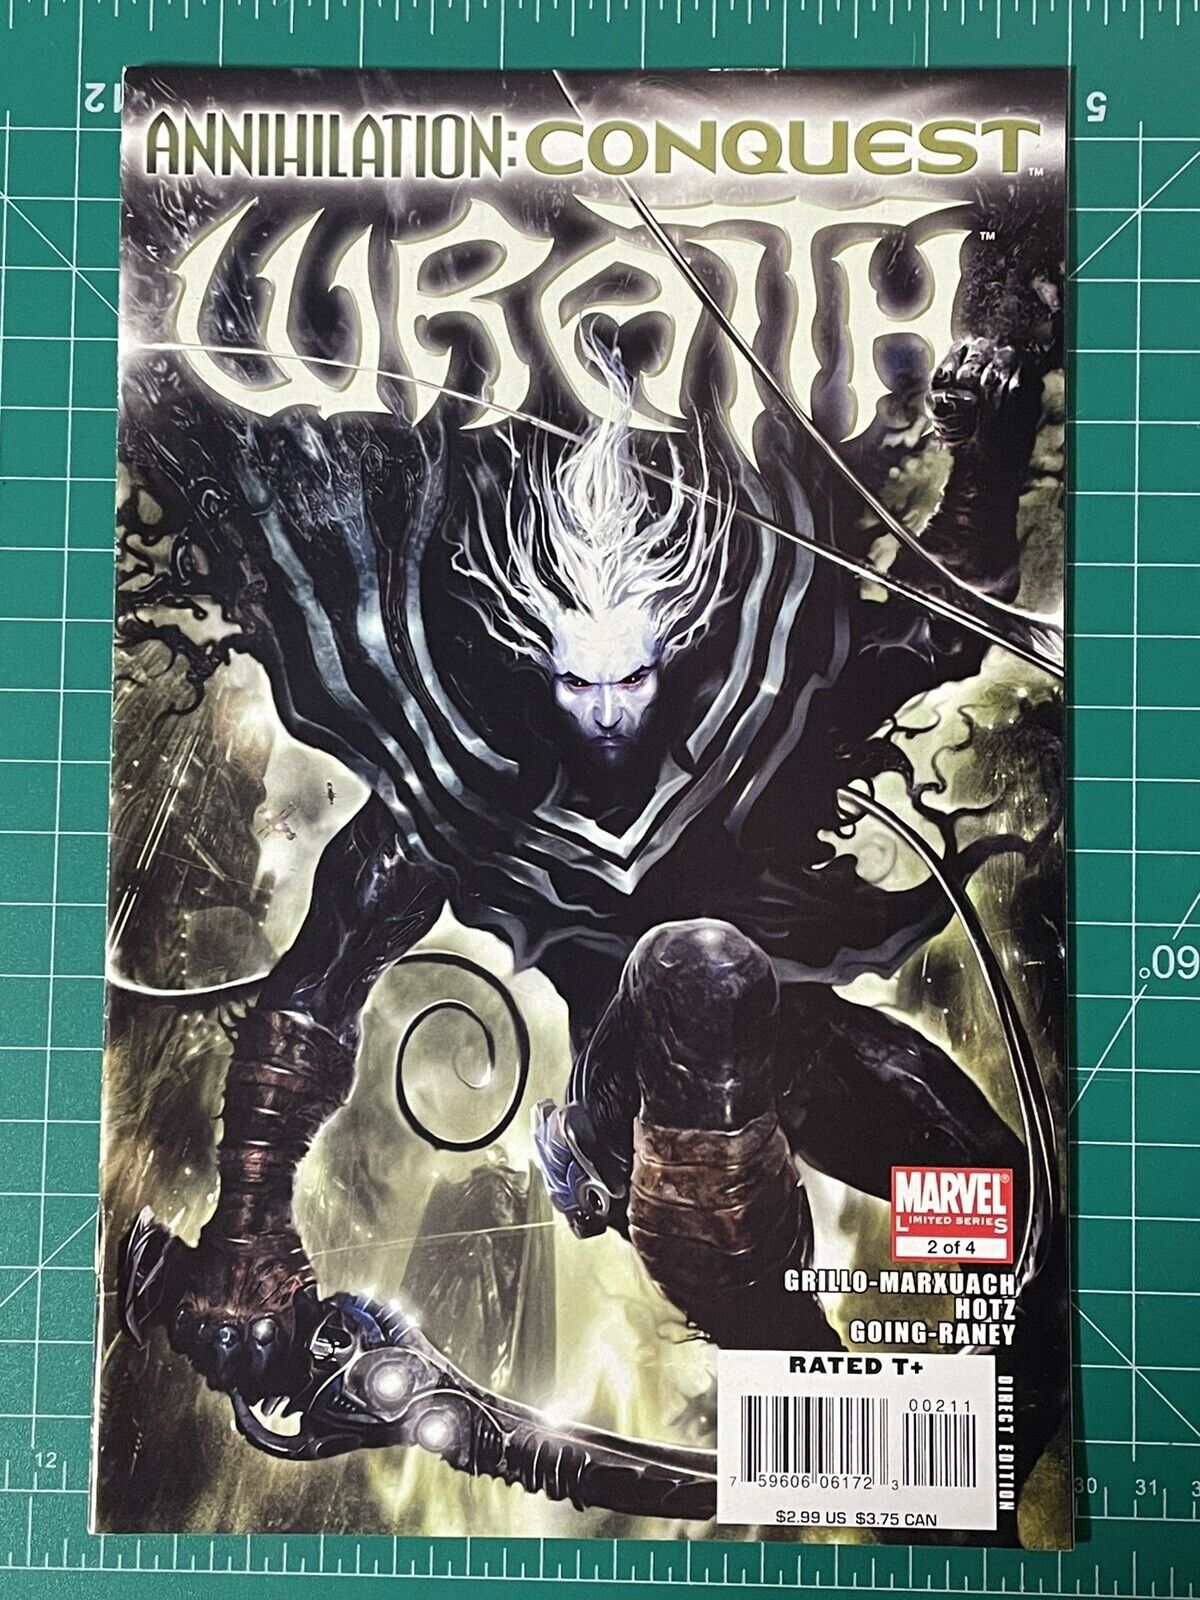 Wrath # 2 - Annihilation Conquest - 1st Exolon